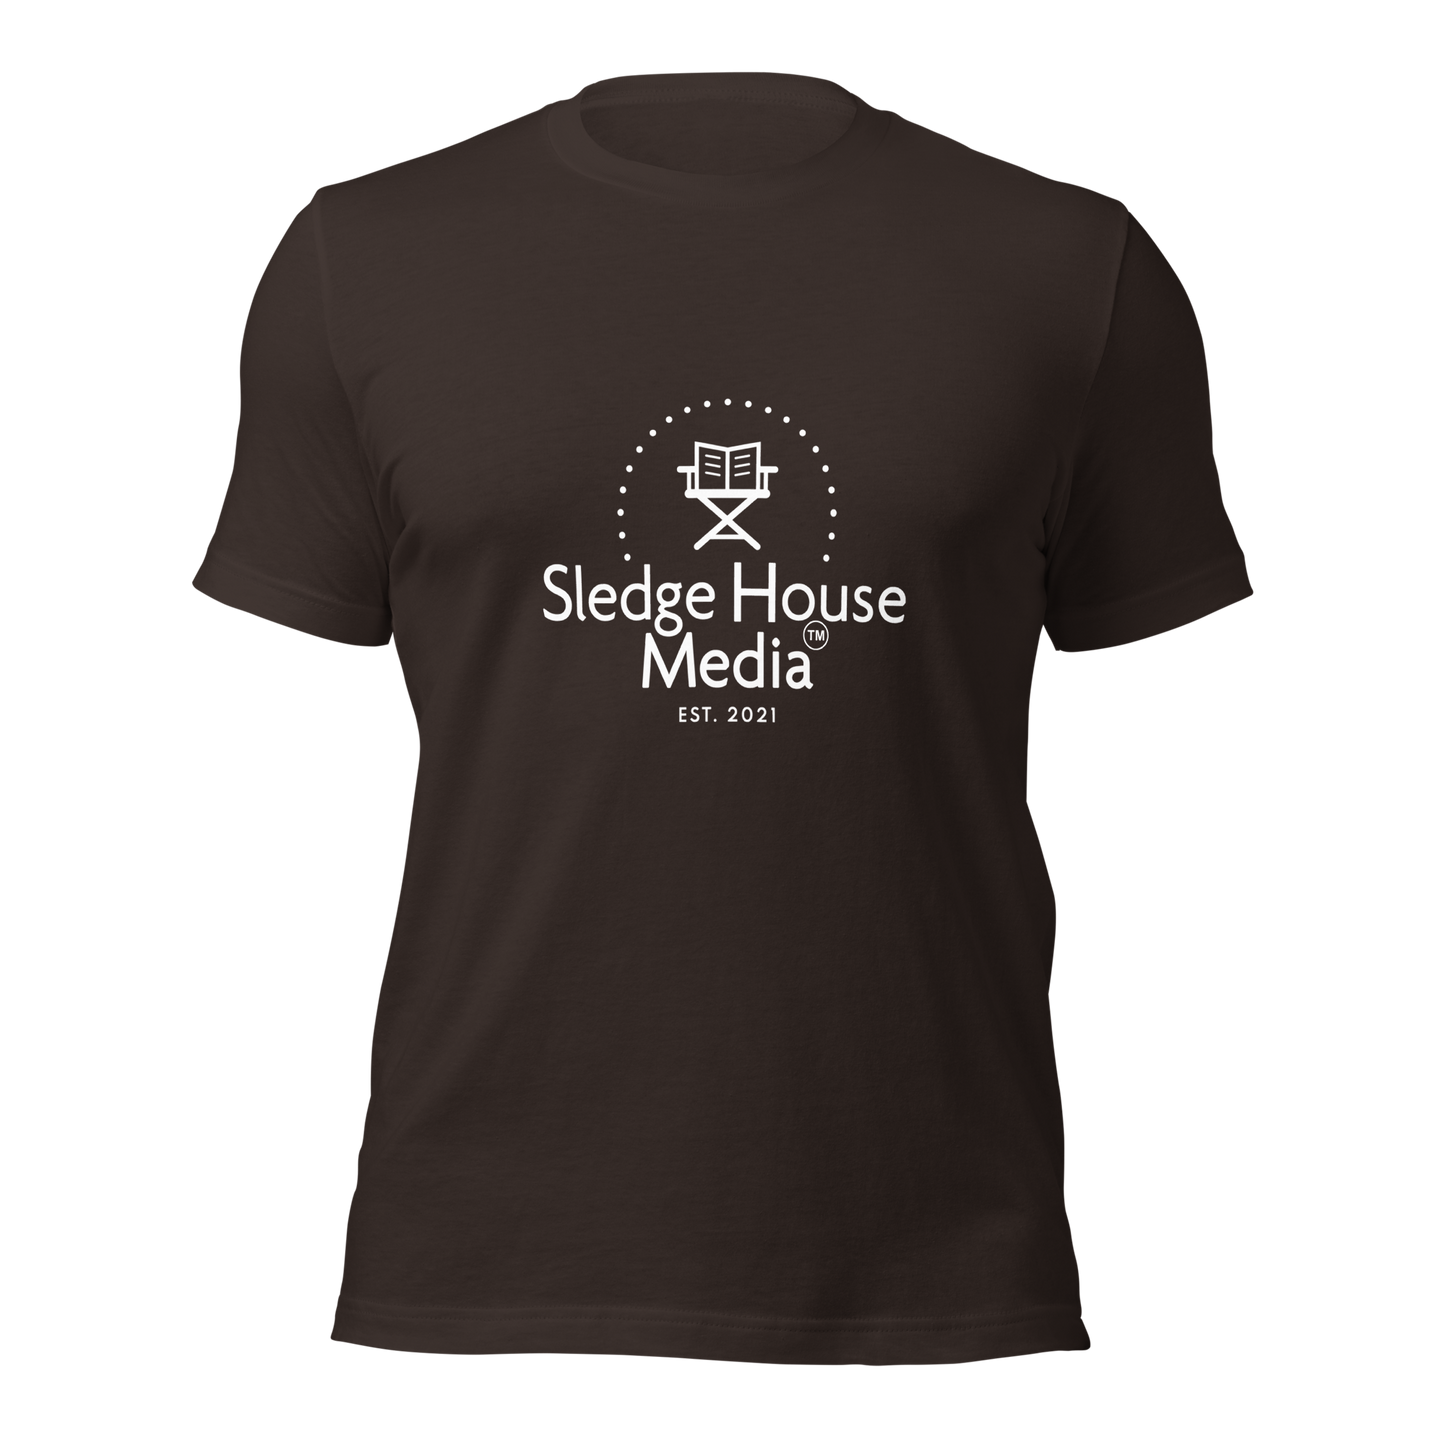 Camiseta unisex "The OG" Sledge House Media